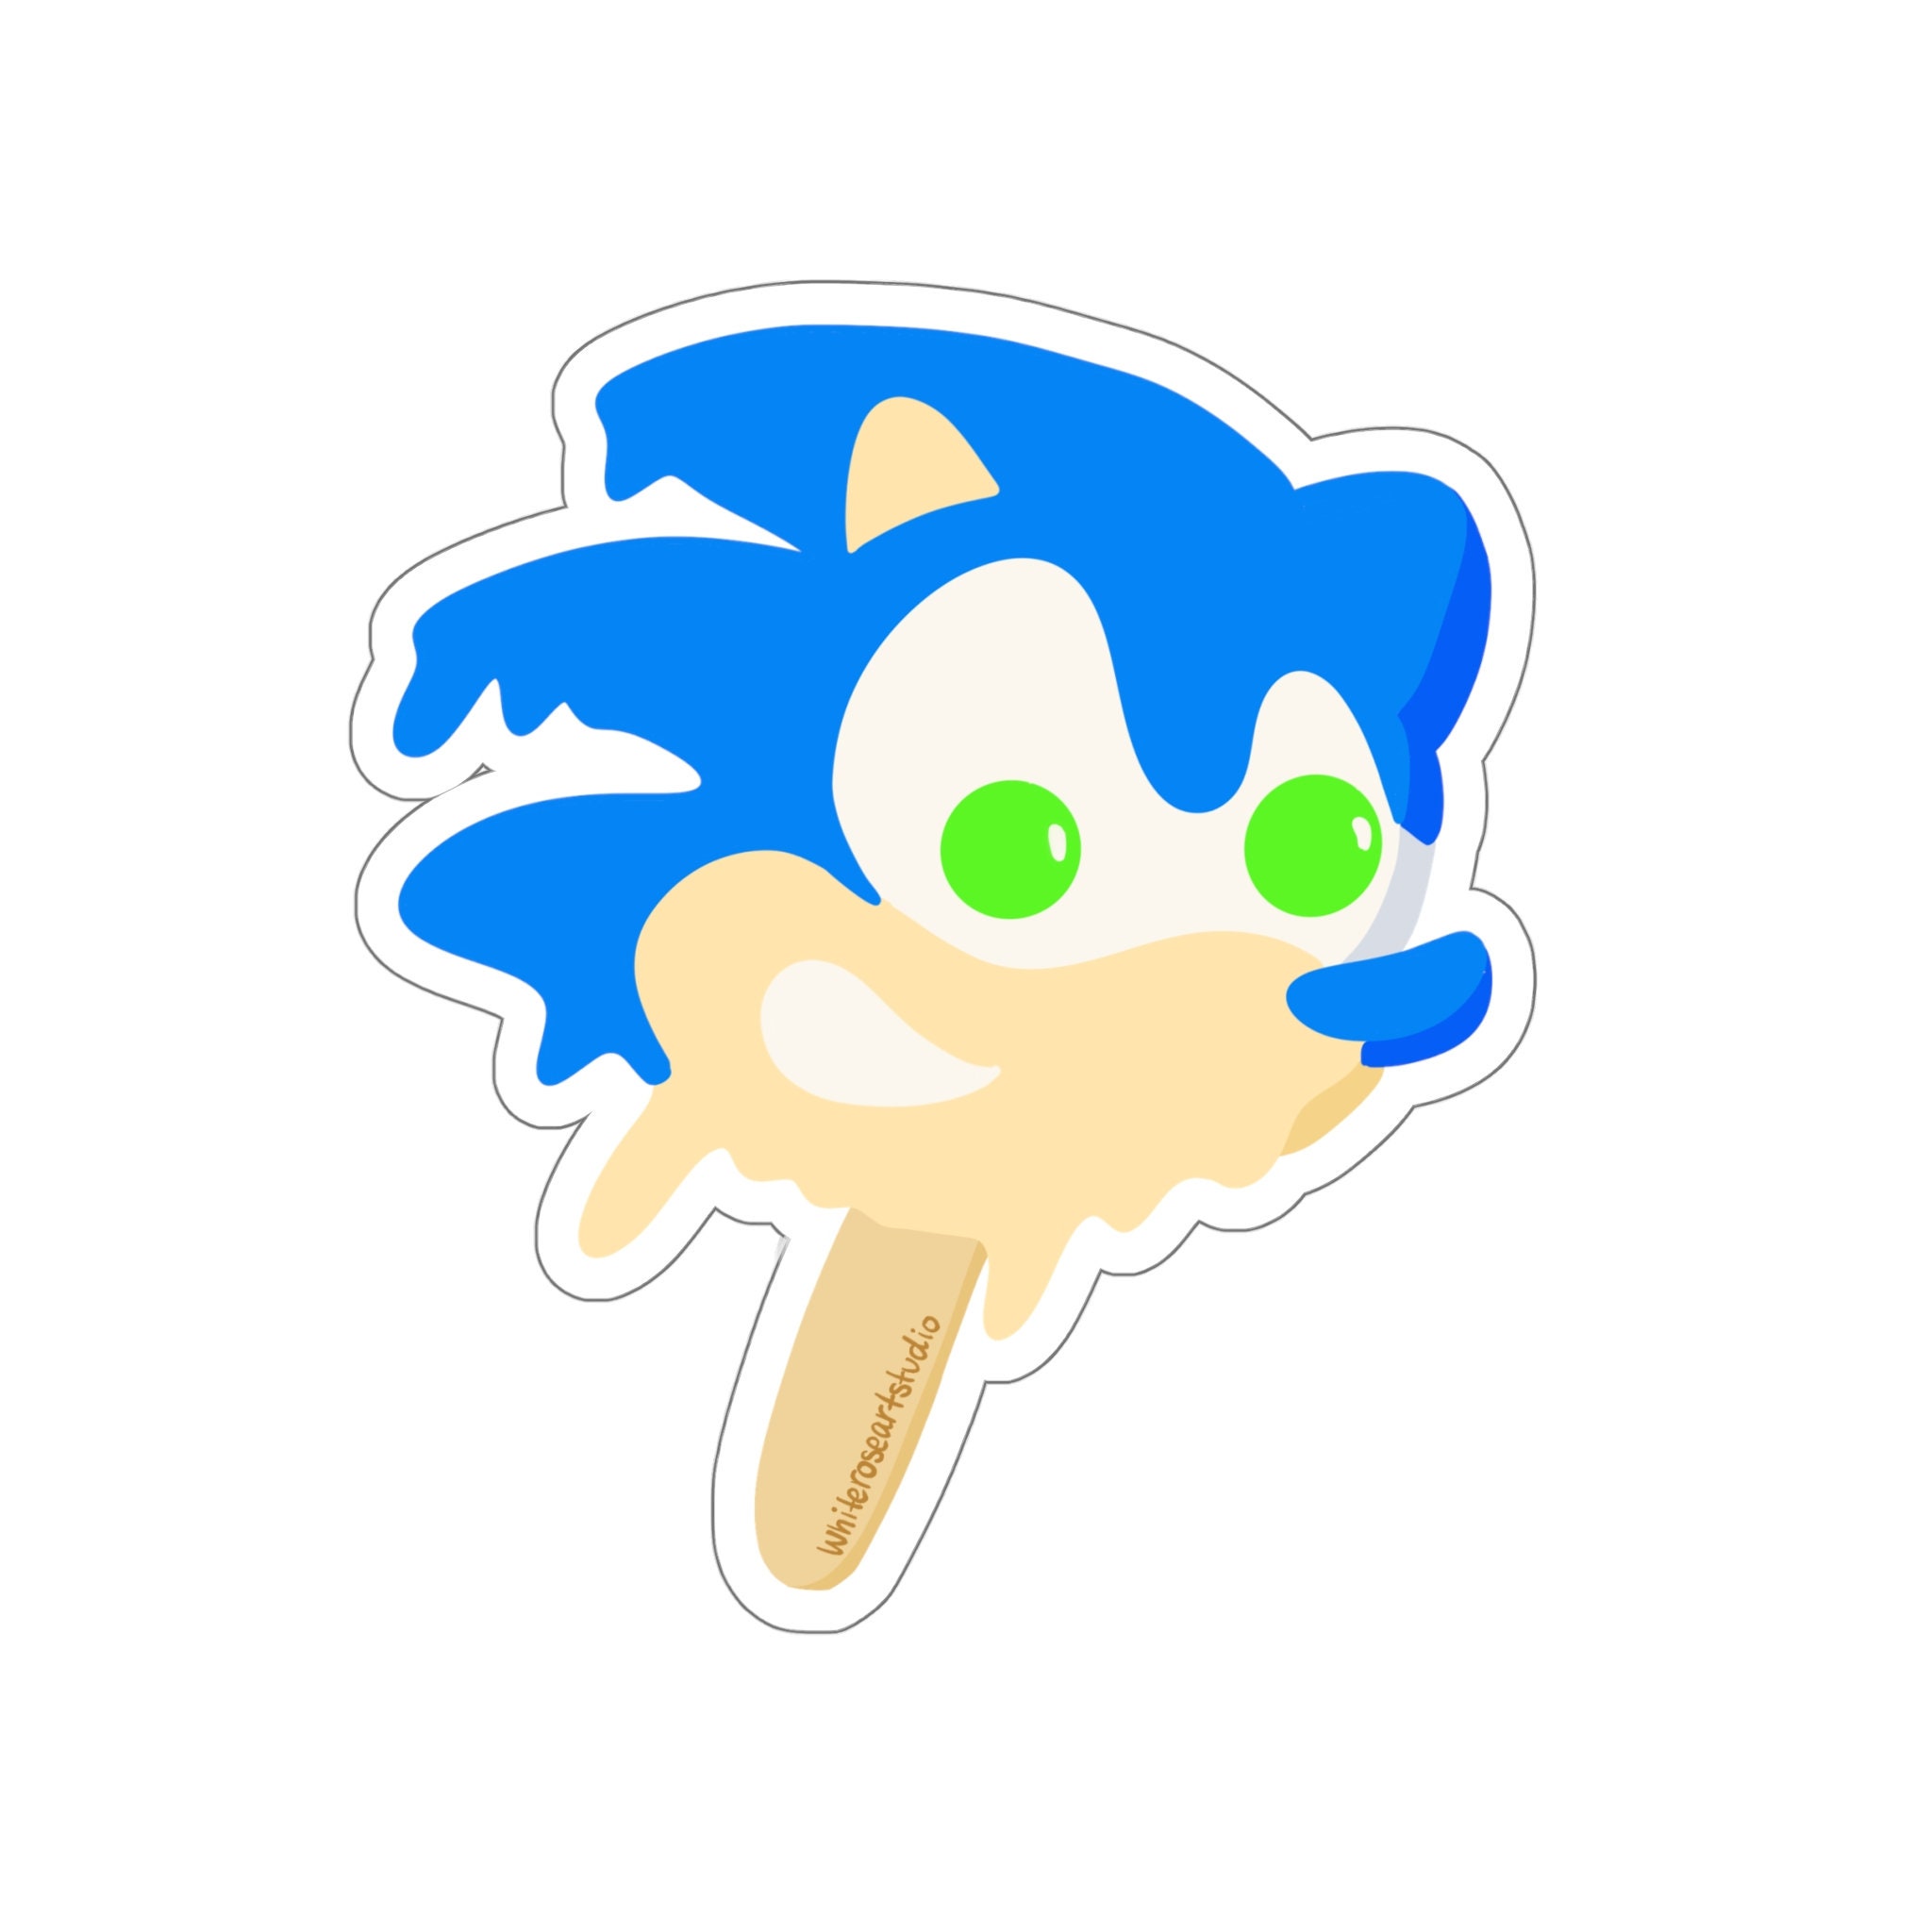 Sonic the Hedgehog Ice Pop Sculpture 